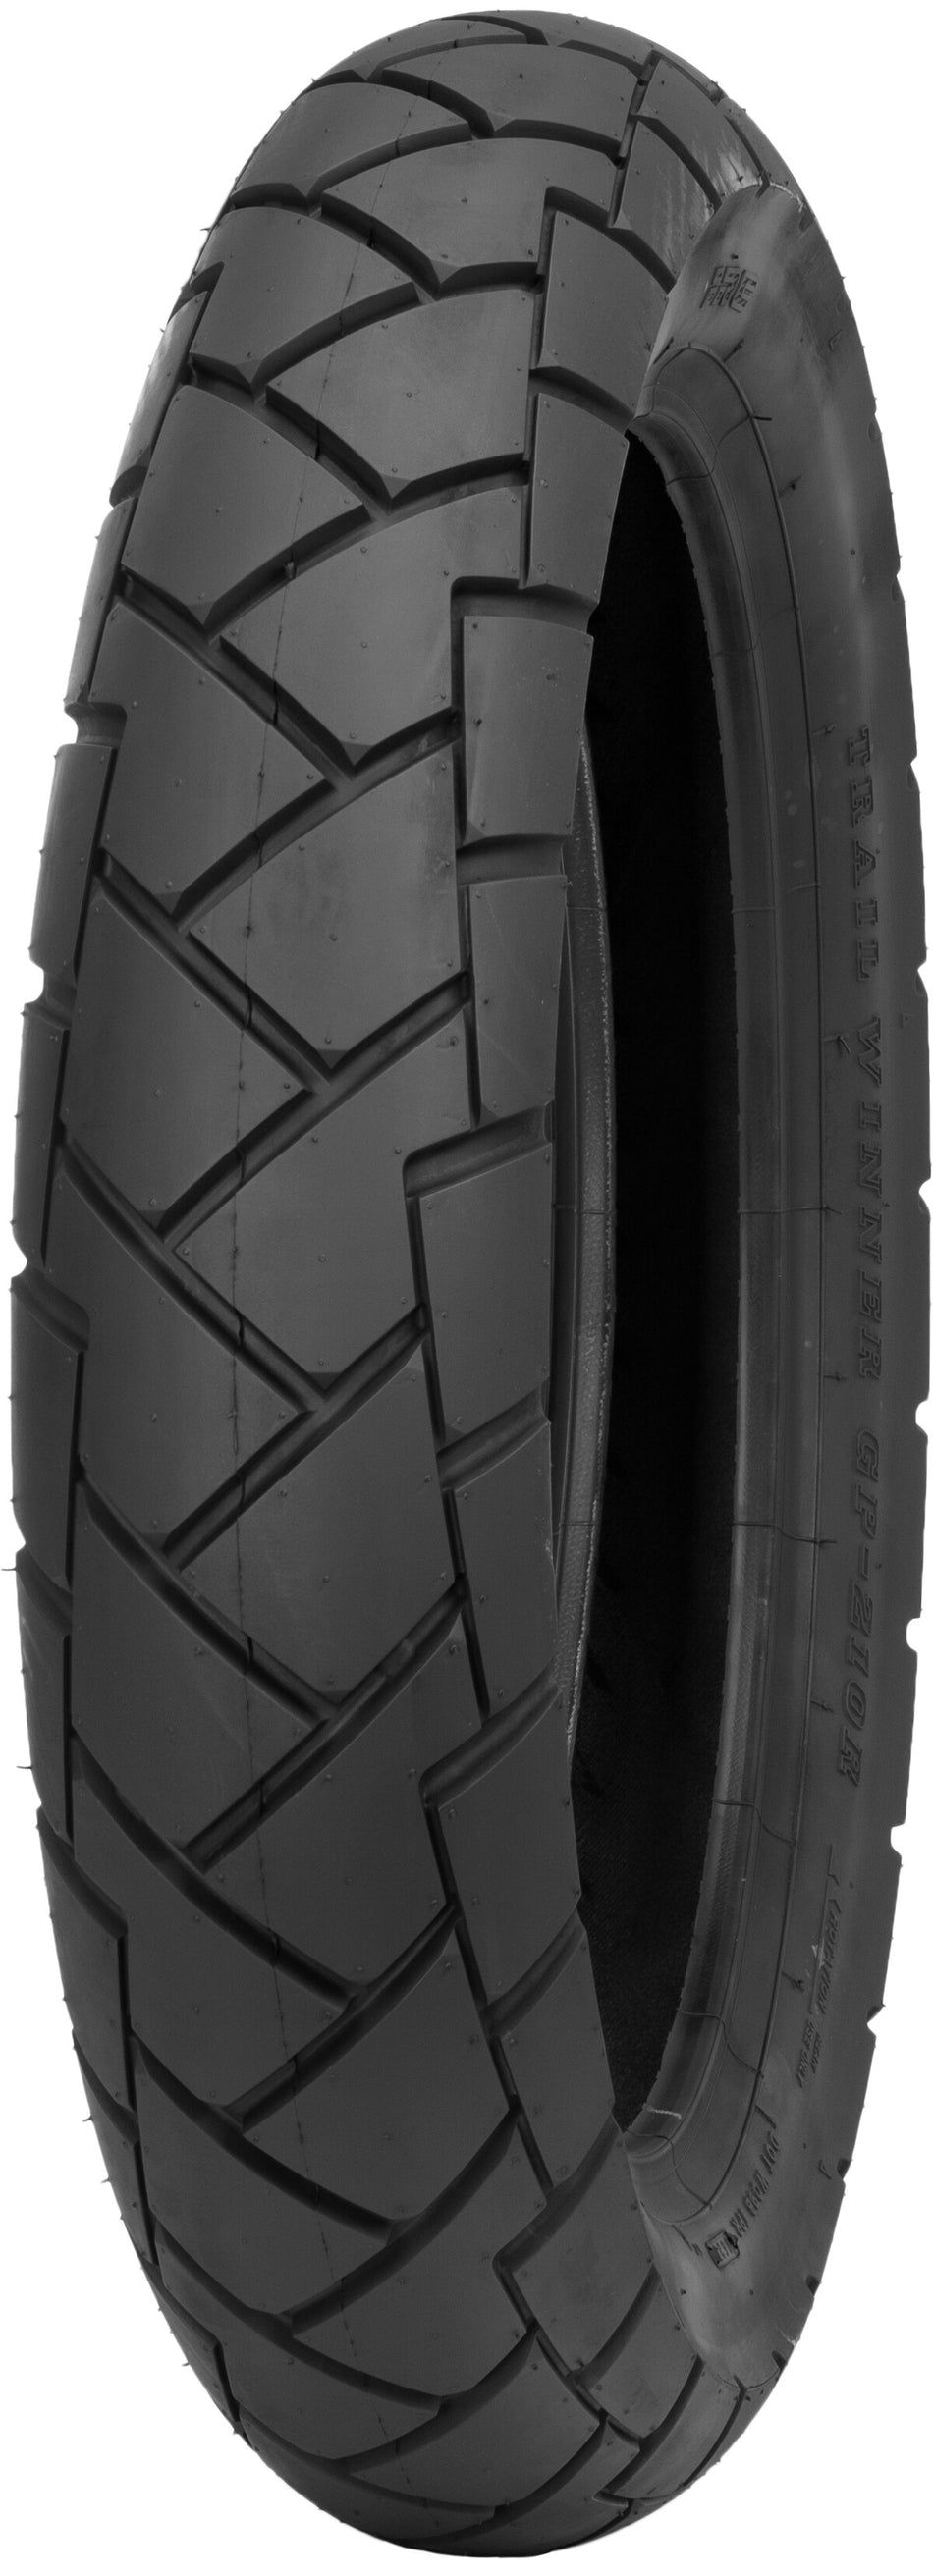 IRC Tire Gp-210 Rear 130/80-17 65s Bias Tl T10446